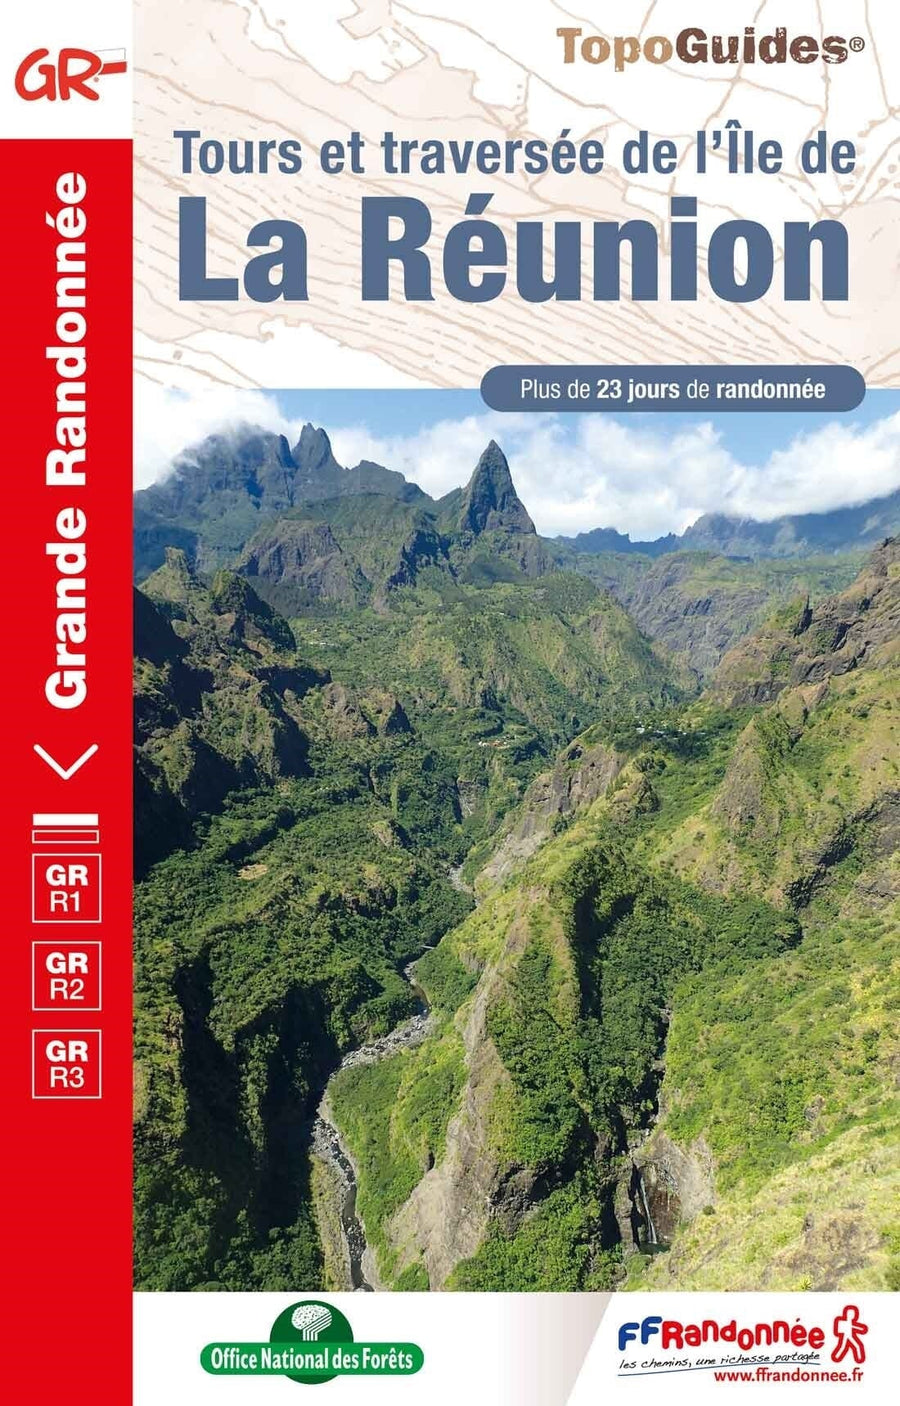 Topoguide de randonnée - Tours et traversée de l'île de La Réunion - GR R1/R2/R3 | FFR guide de randonnée FFR - Fédération Française de Randonnée 